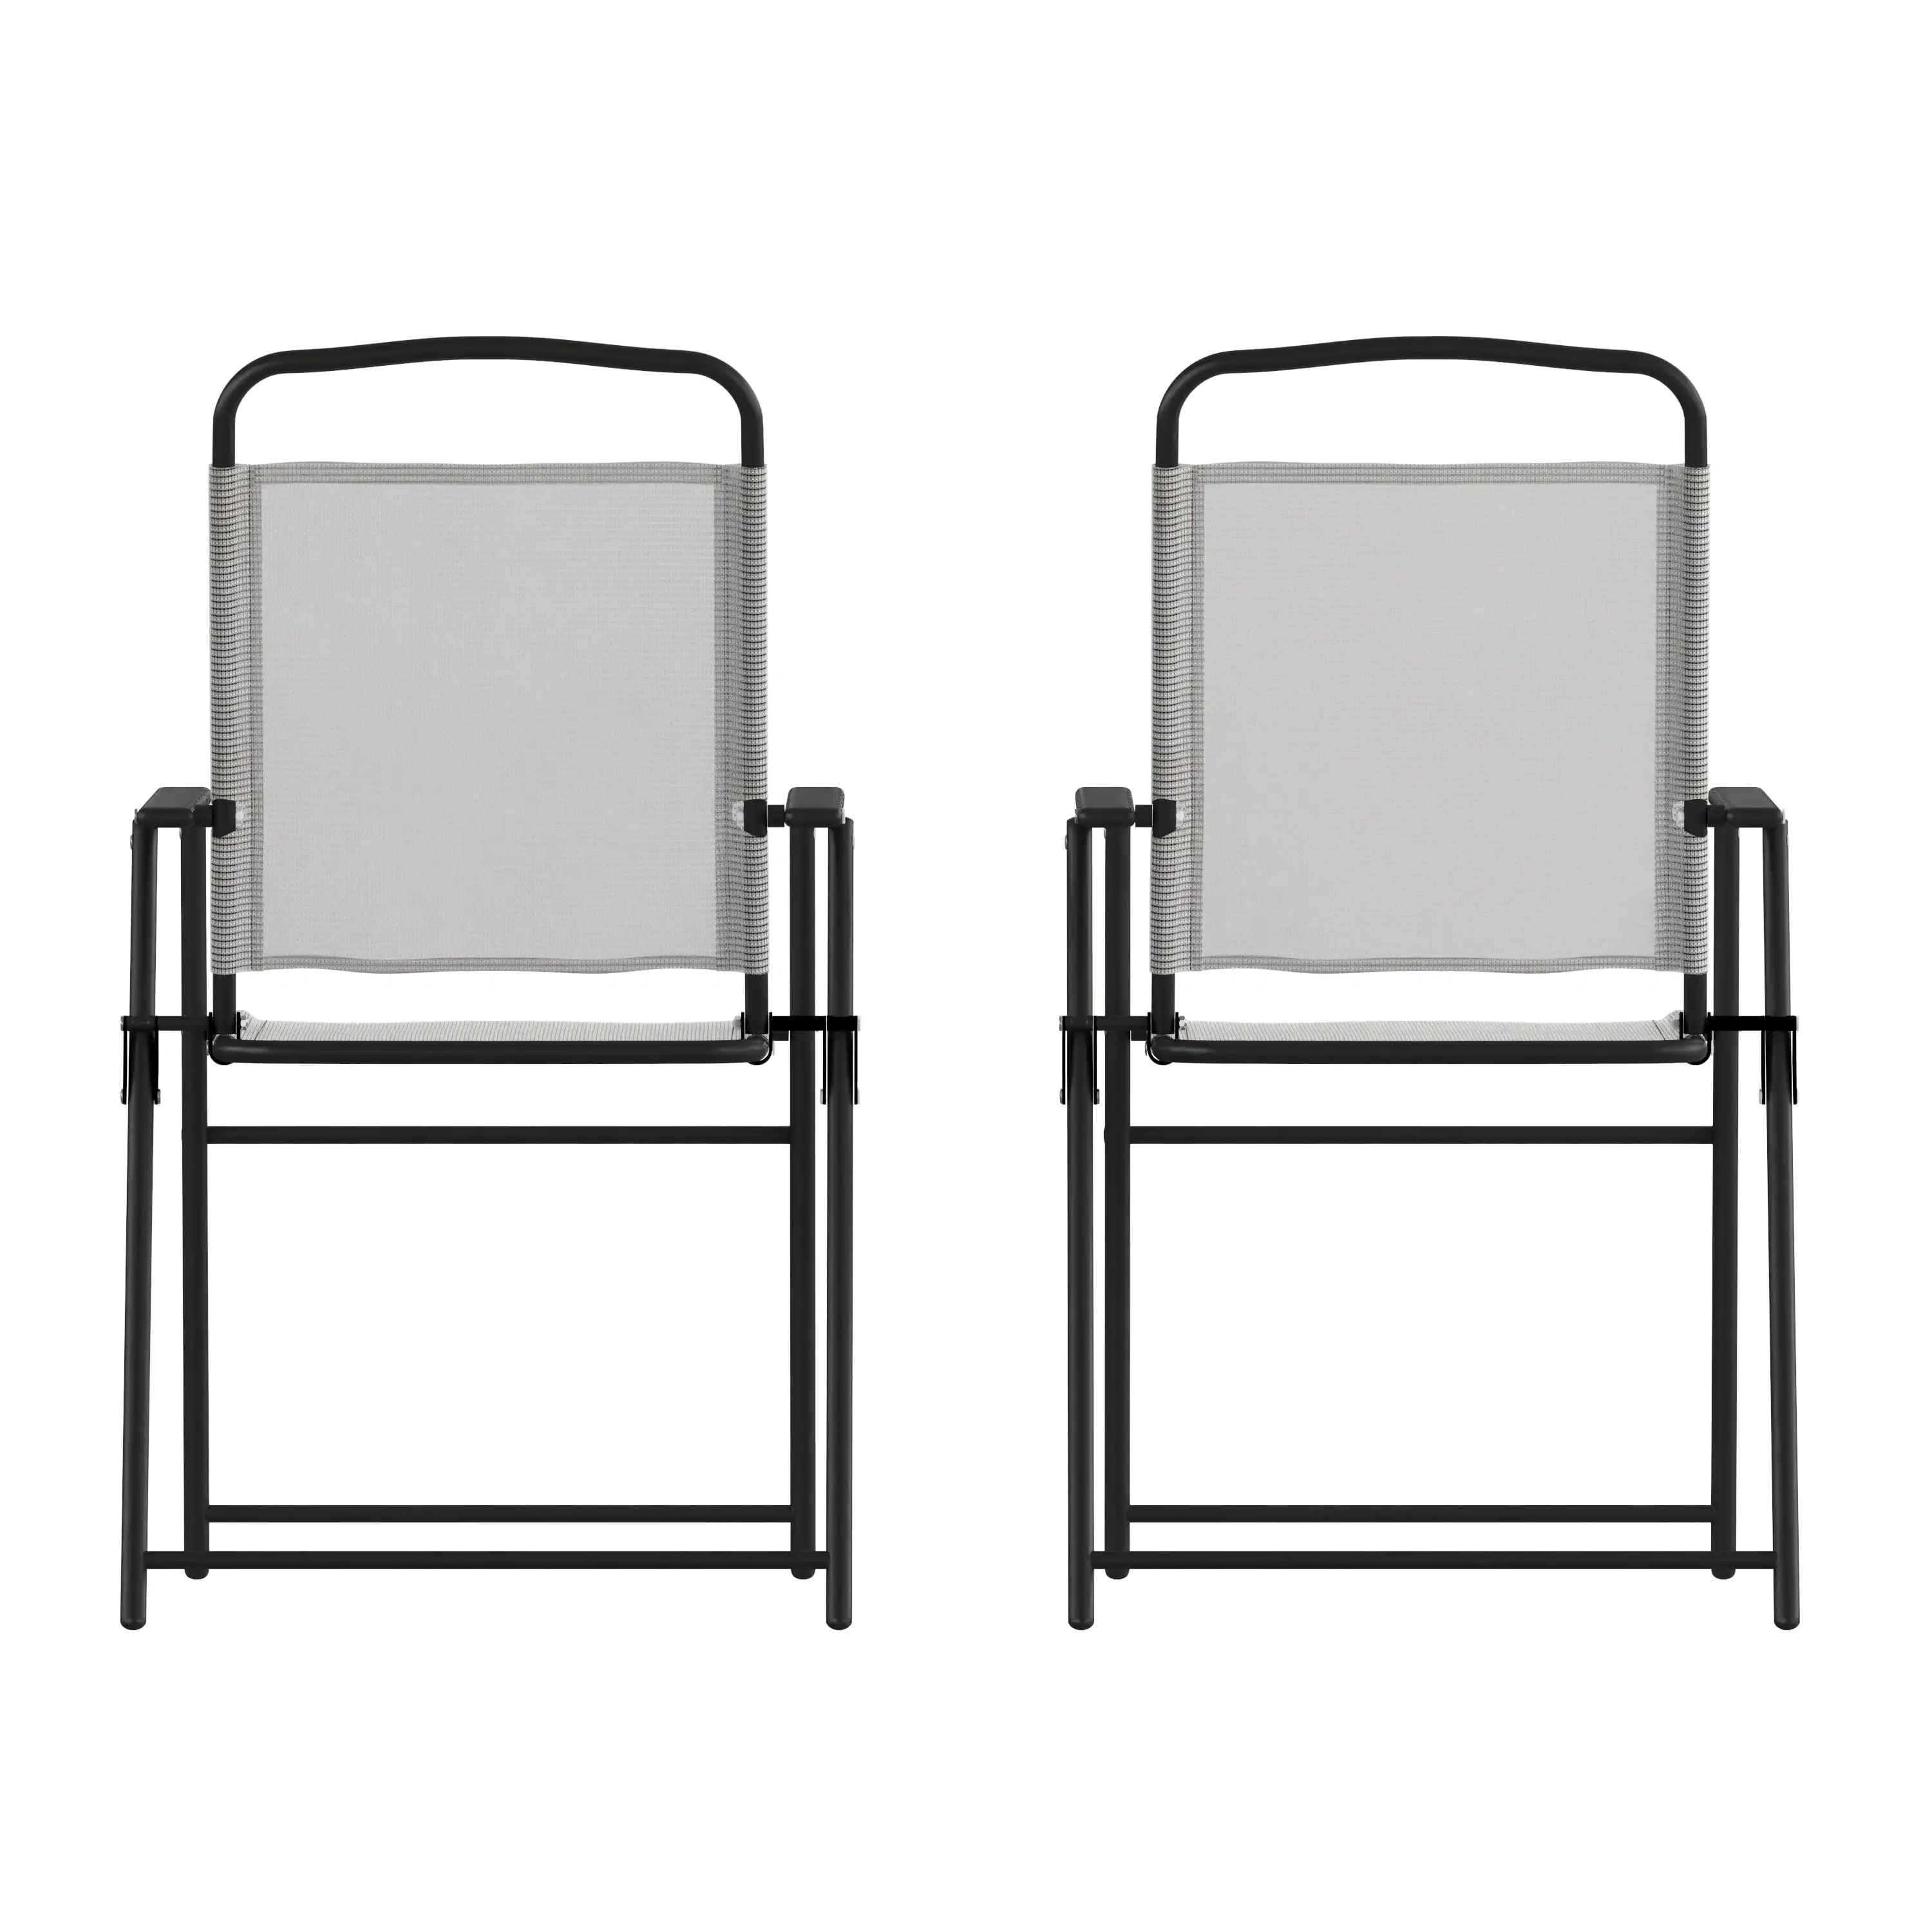 

Набор мебели Flash из 2 мягких складных стульев для внутреннего дворика, уличные текстиленовые стулья для газона с подлокотниками серого цвета